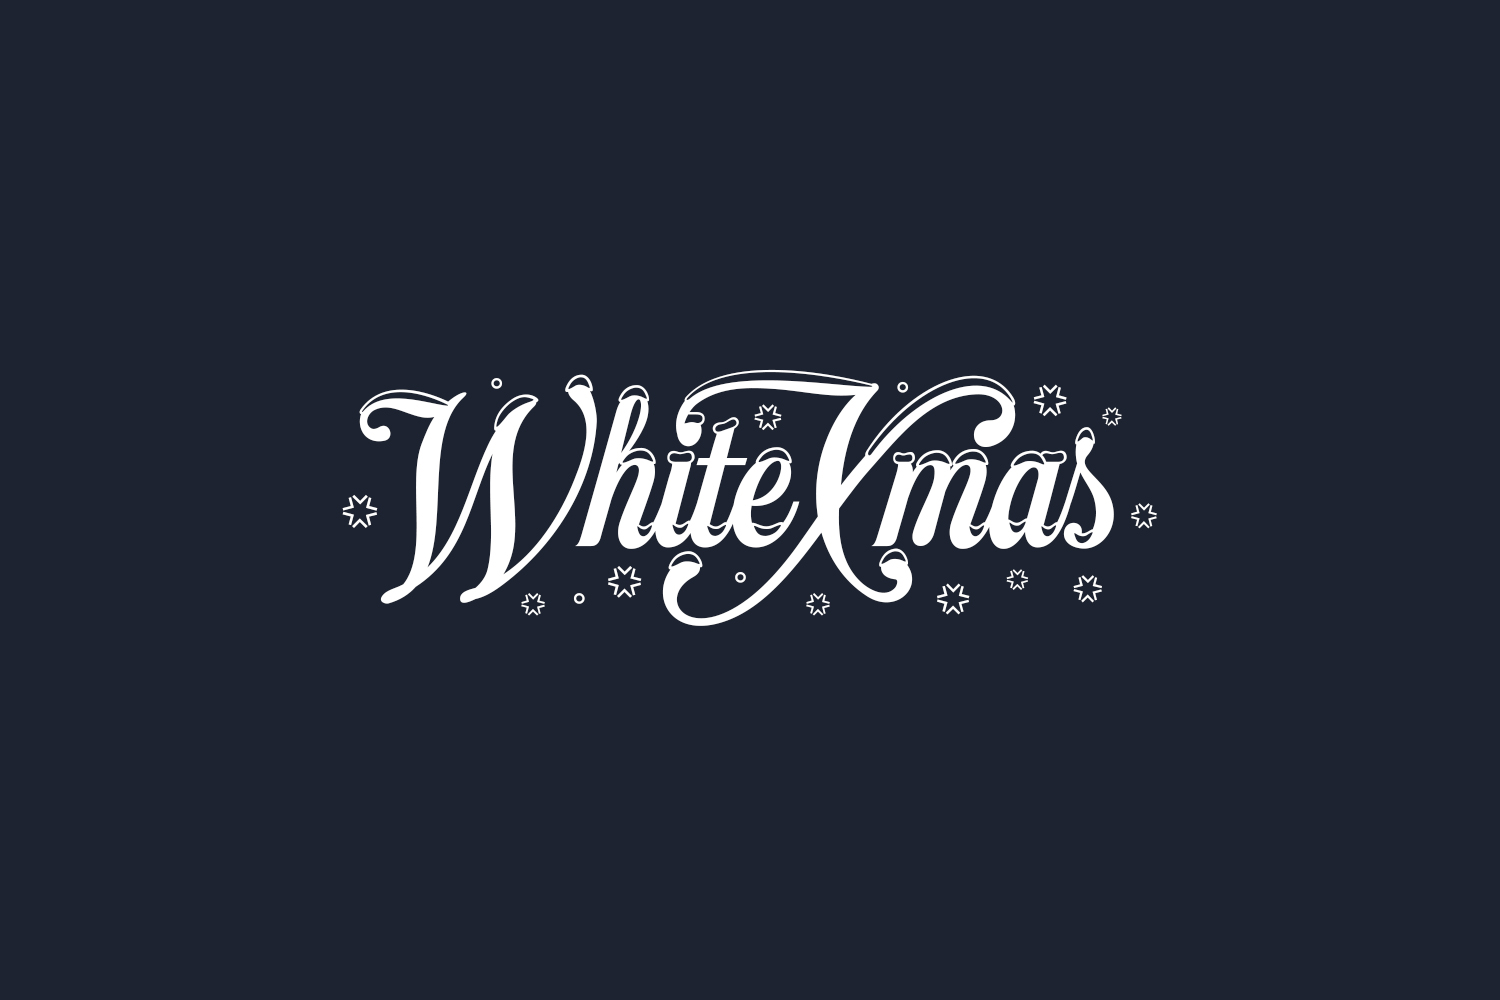 White Xmas Free Font